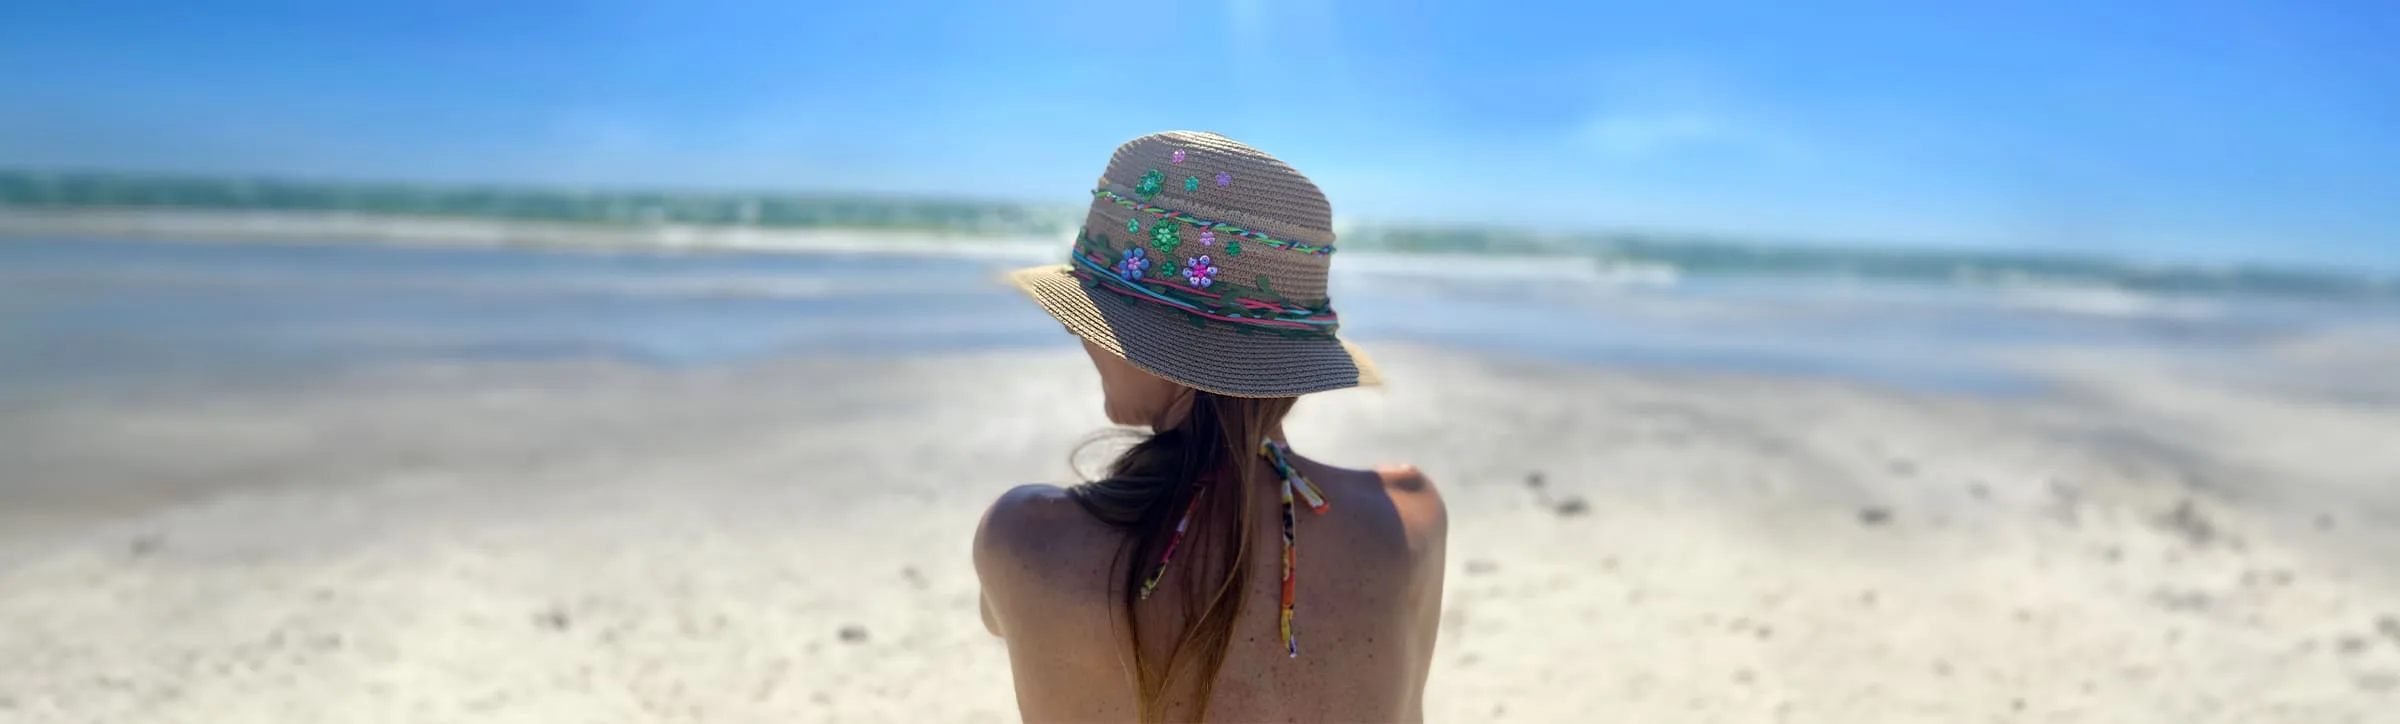 Mujer-sentada-en-playa-en-miami-beach-con-sombrero-fedora (1)